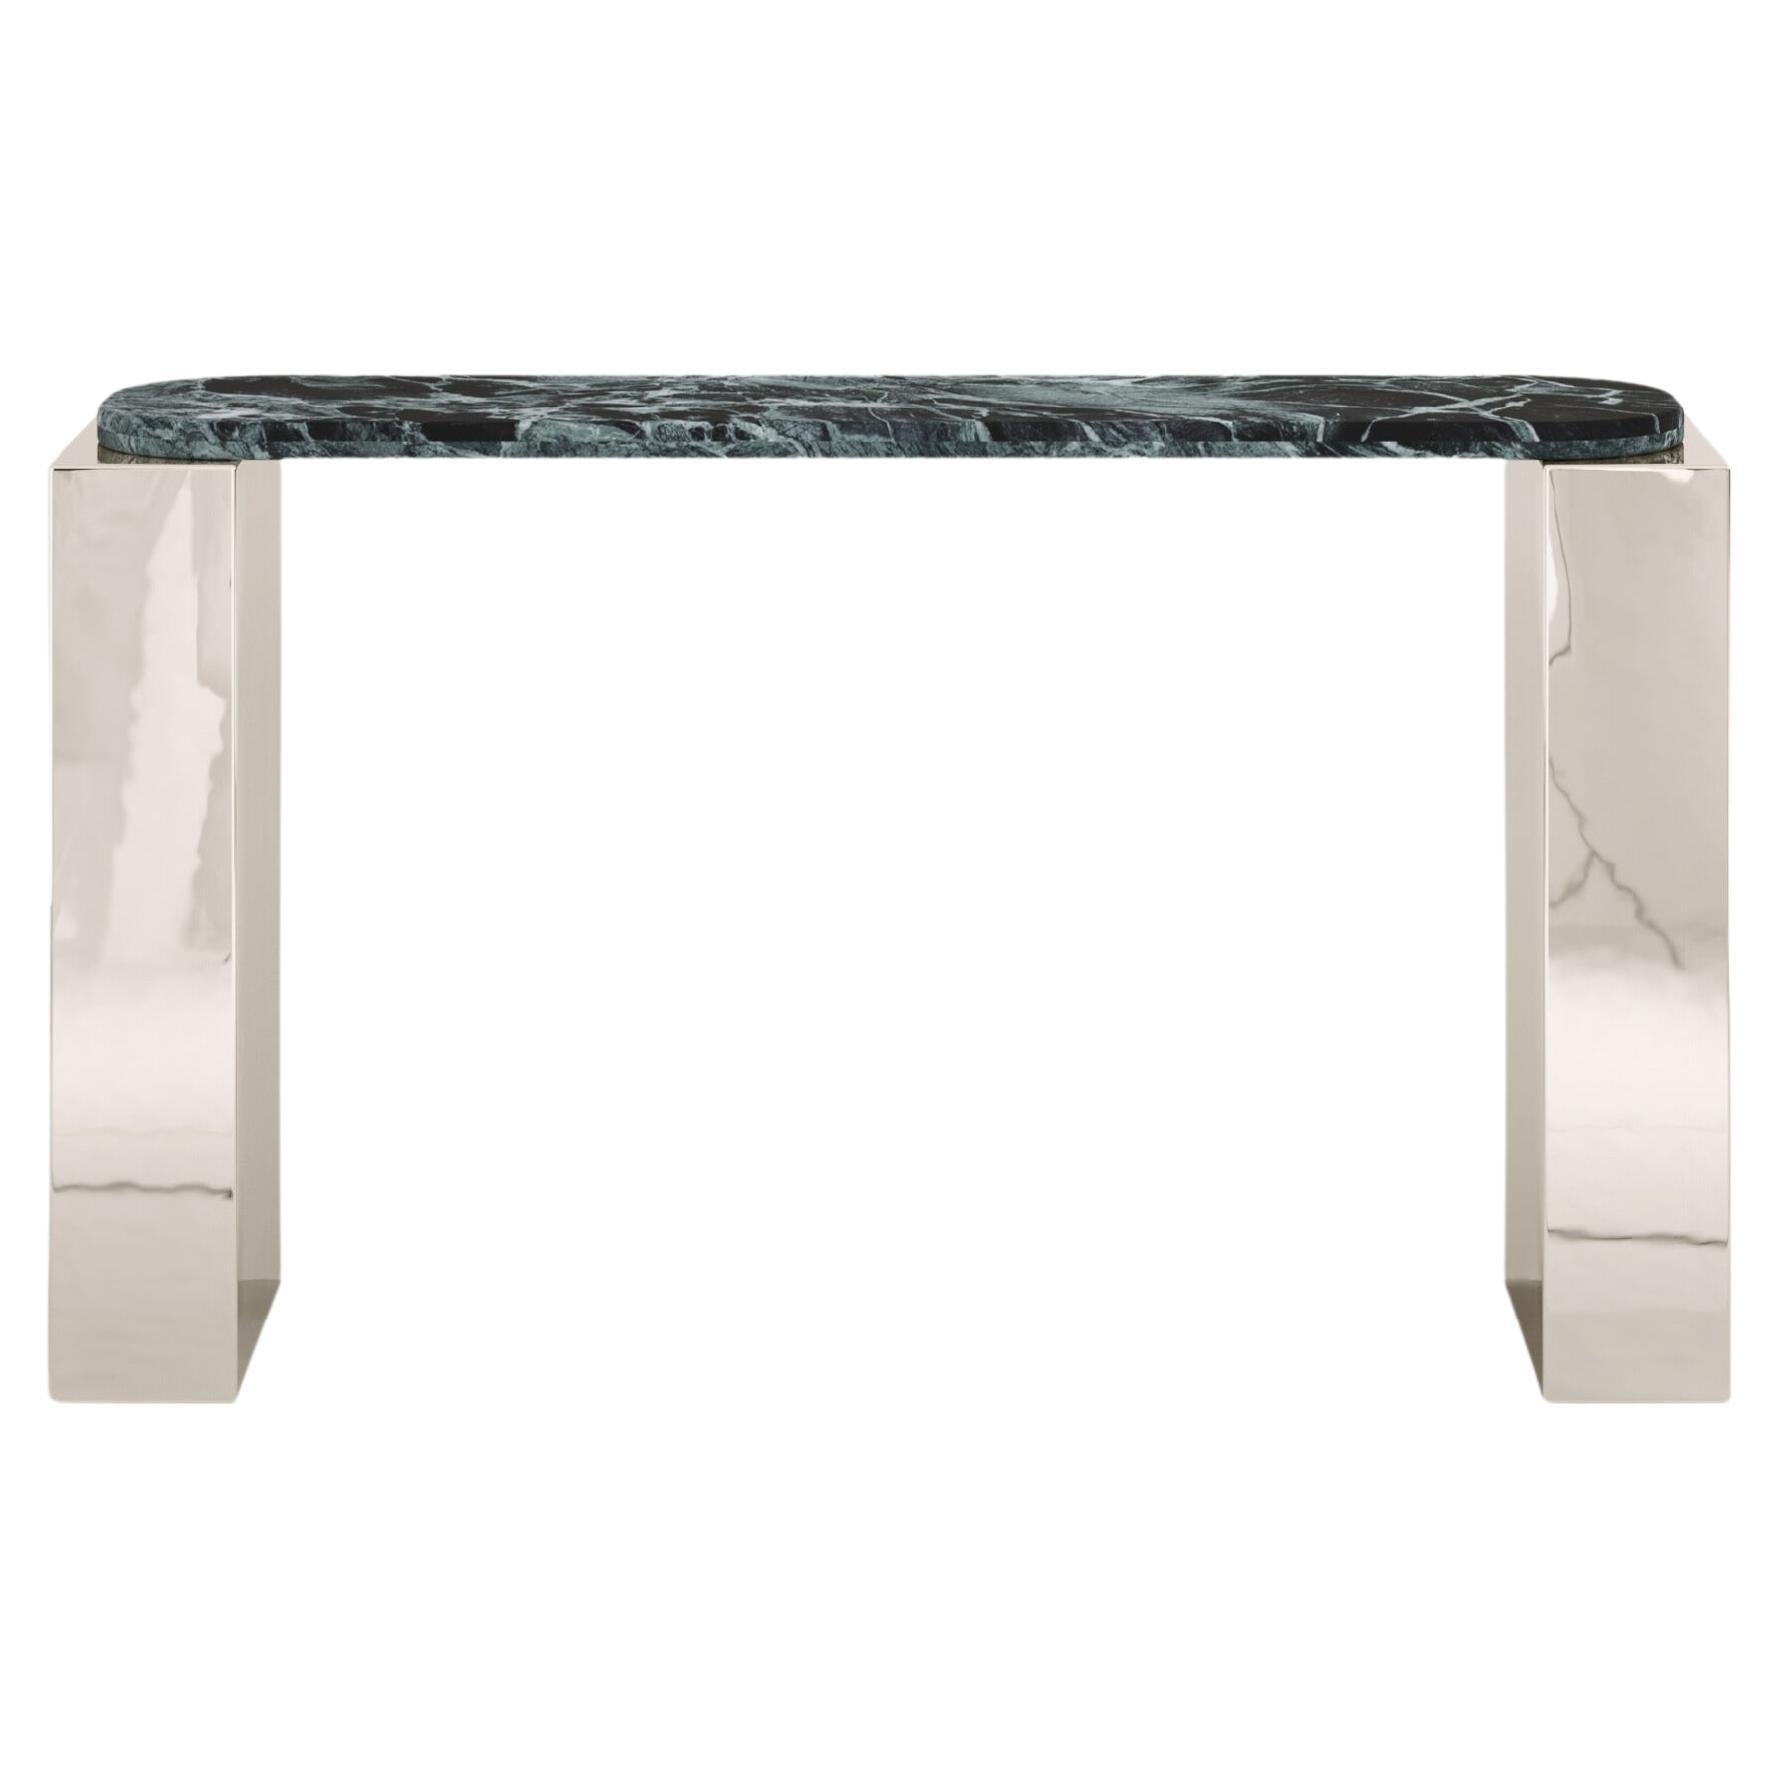 FORM(LA) Cubo Console Table 50”L x 17”W x 36”H Verde Alpi Marble & Chrome For Sale